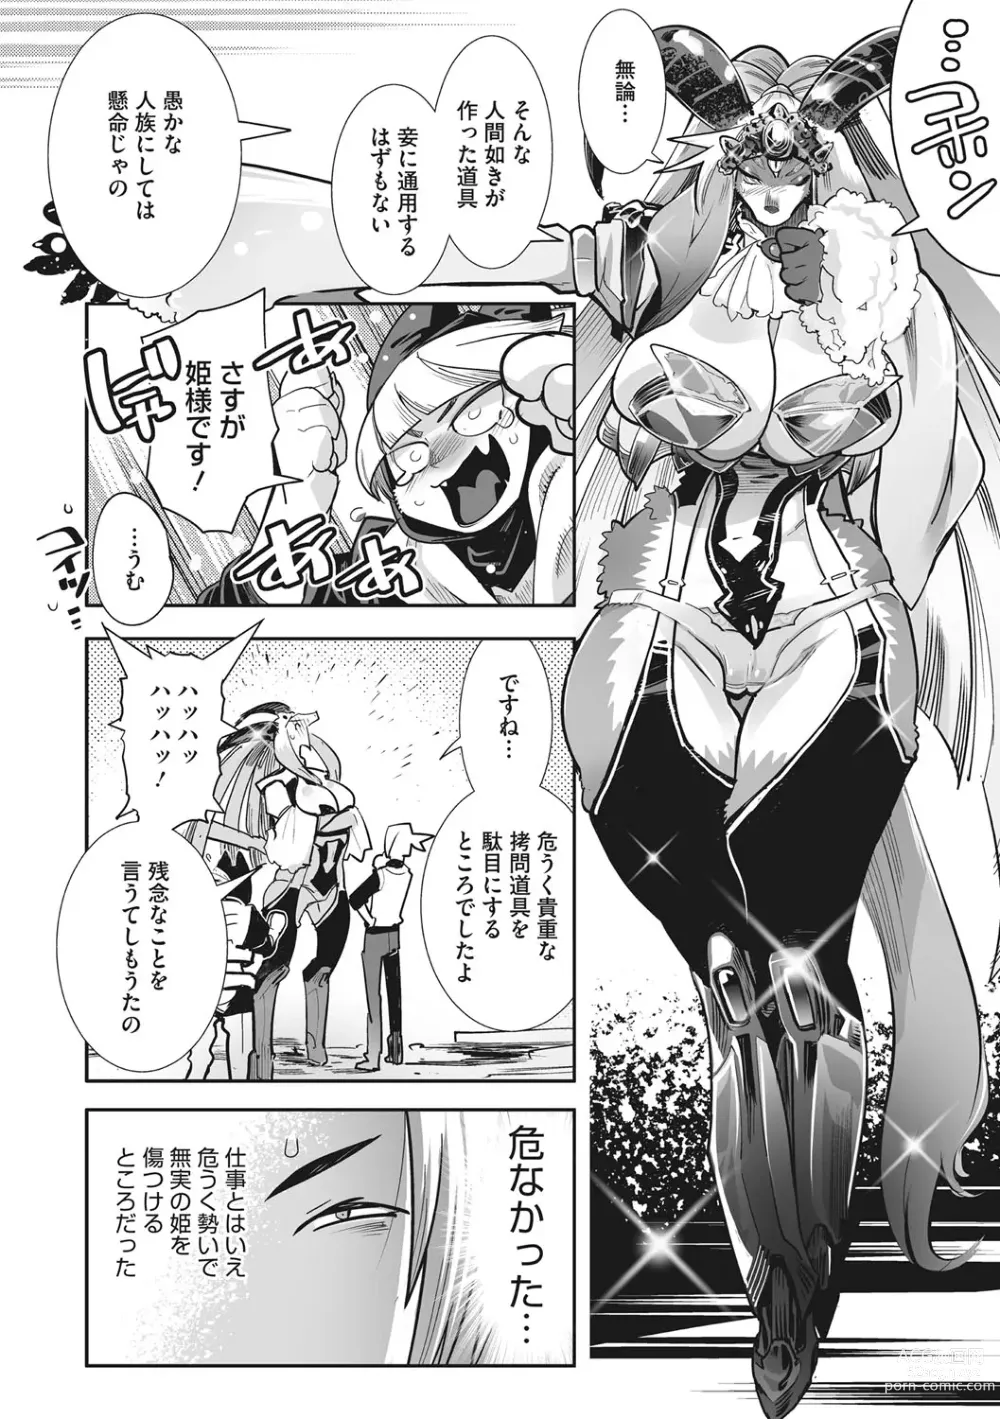 Page 13 of manga Kemono to Koishite Nani ga Warui!